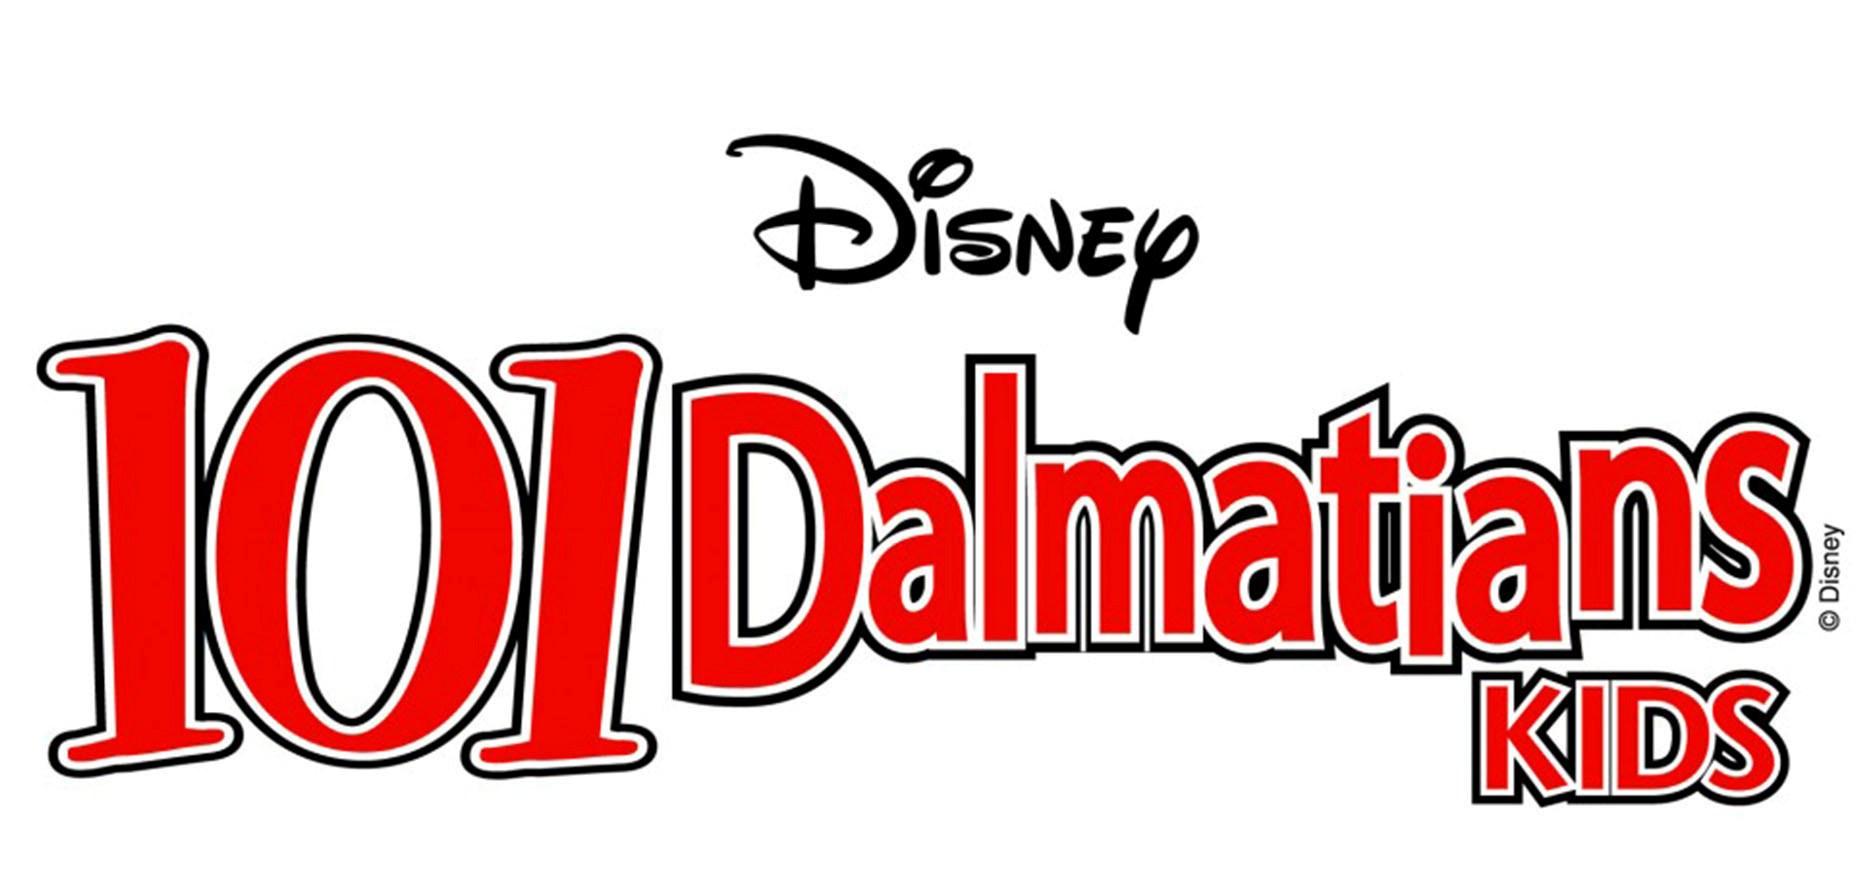 101 Dalmatians Logo - 101 Dalmatians Logo School Of The Arts